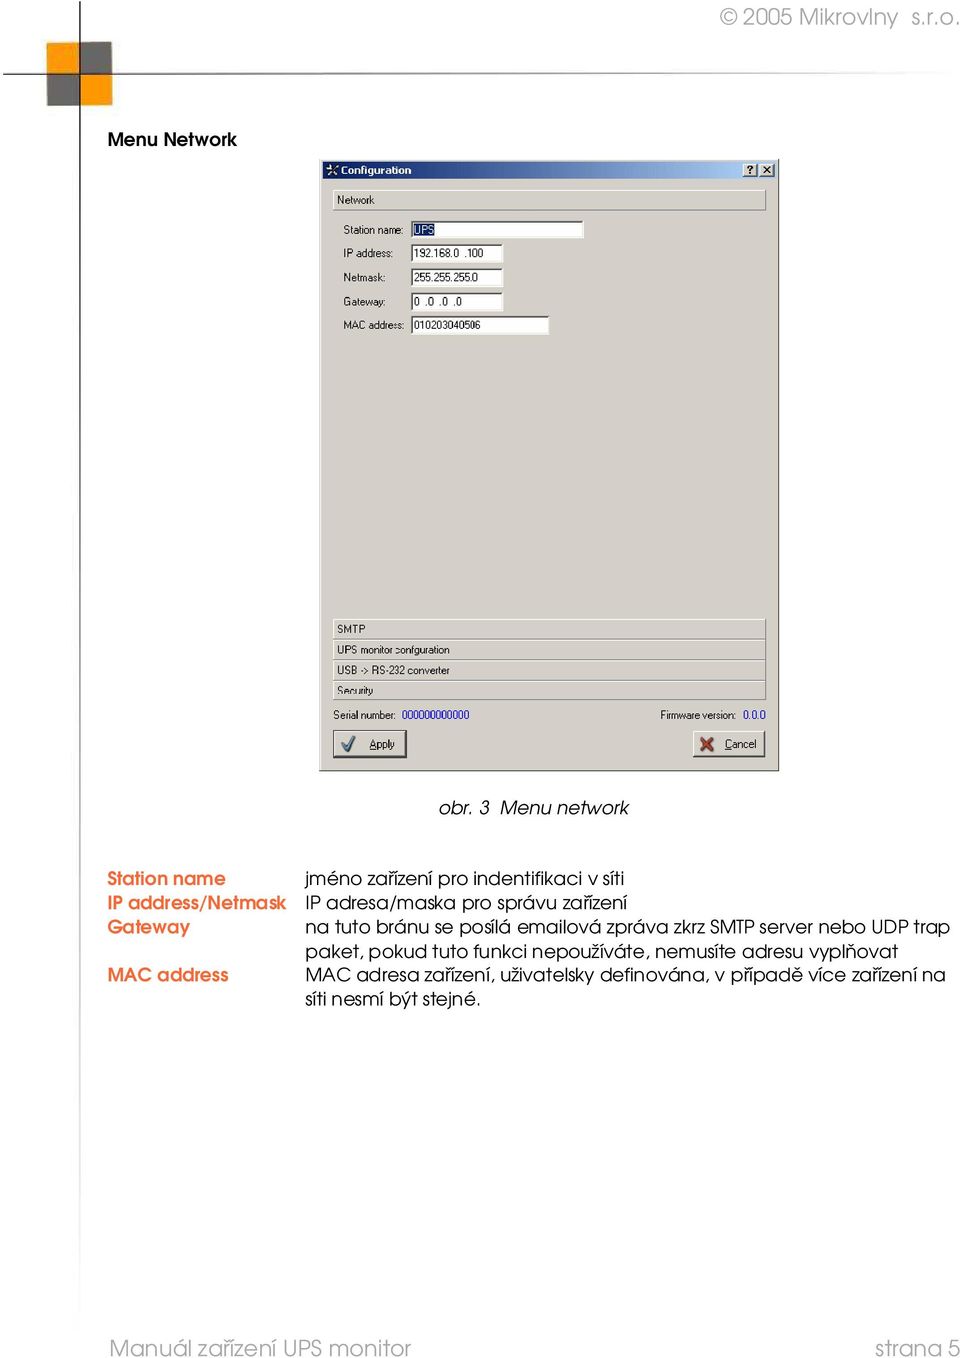 adresa/maska pro správu zařízení Gateway na tuto bránu se posílá emailová zpráva zkrz SMTP server